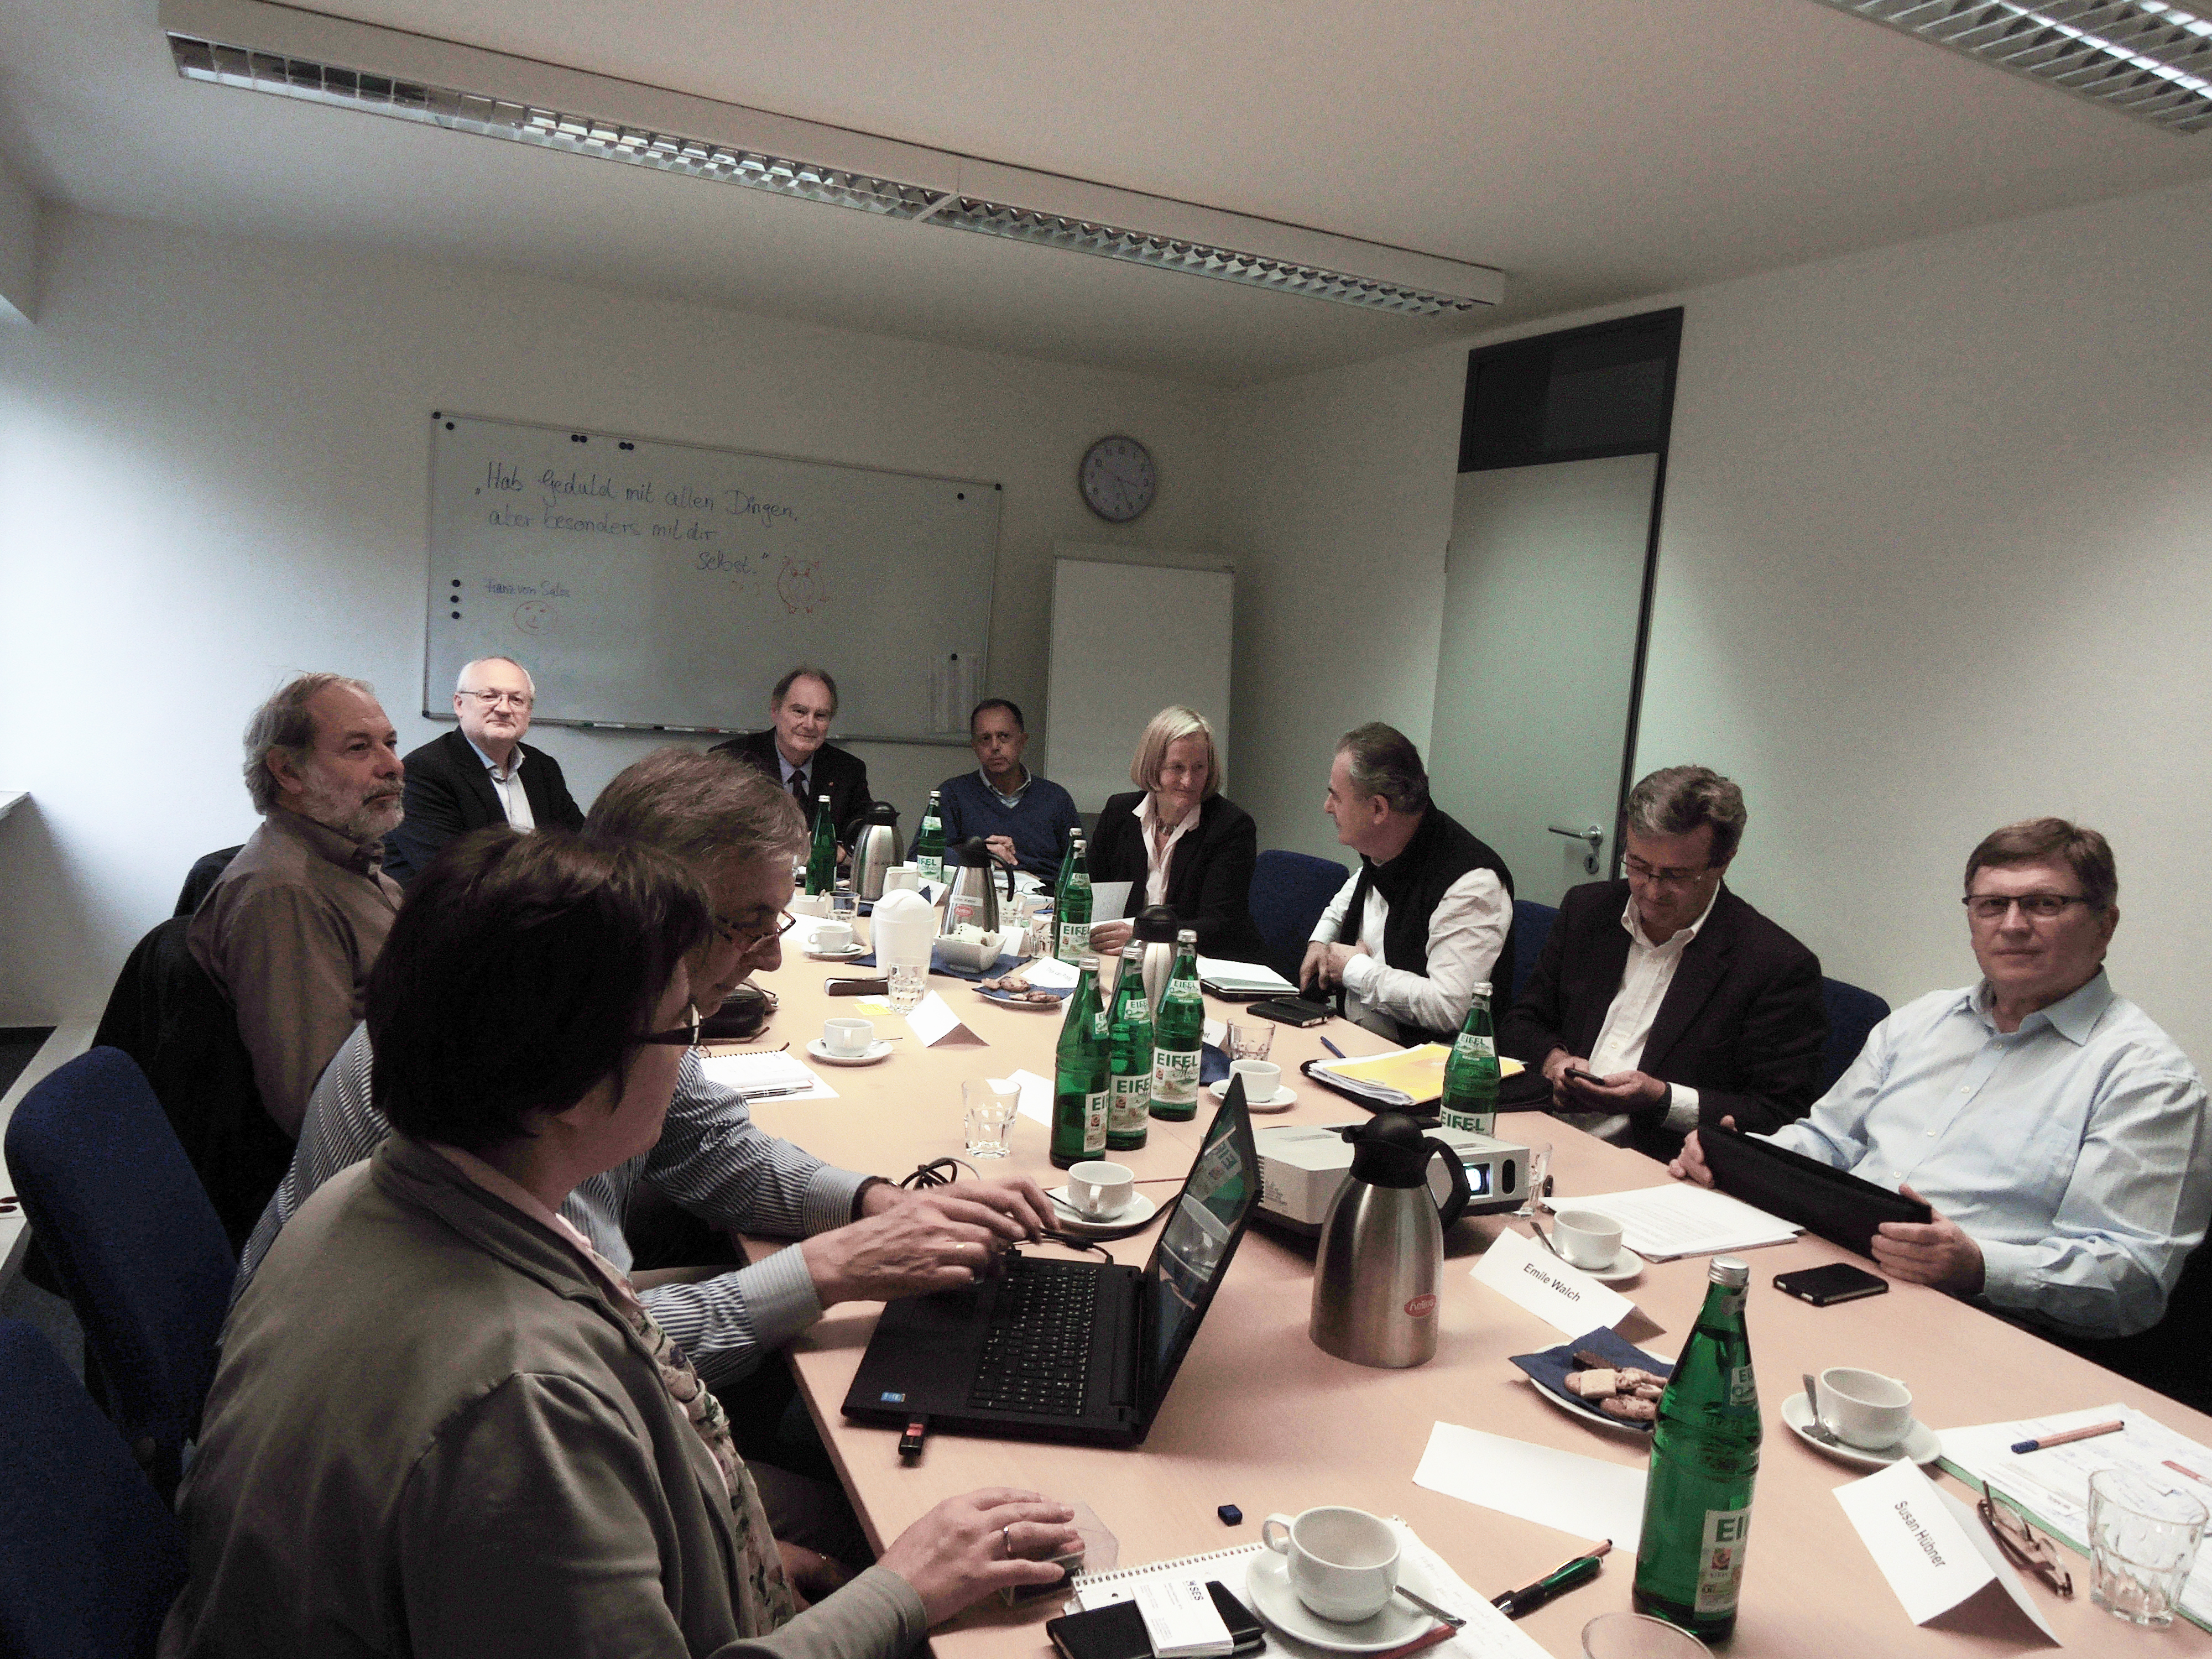 Notizie incoraggianti per i soci VSP dal Workshop Ceses tenutosi a Bonn.